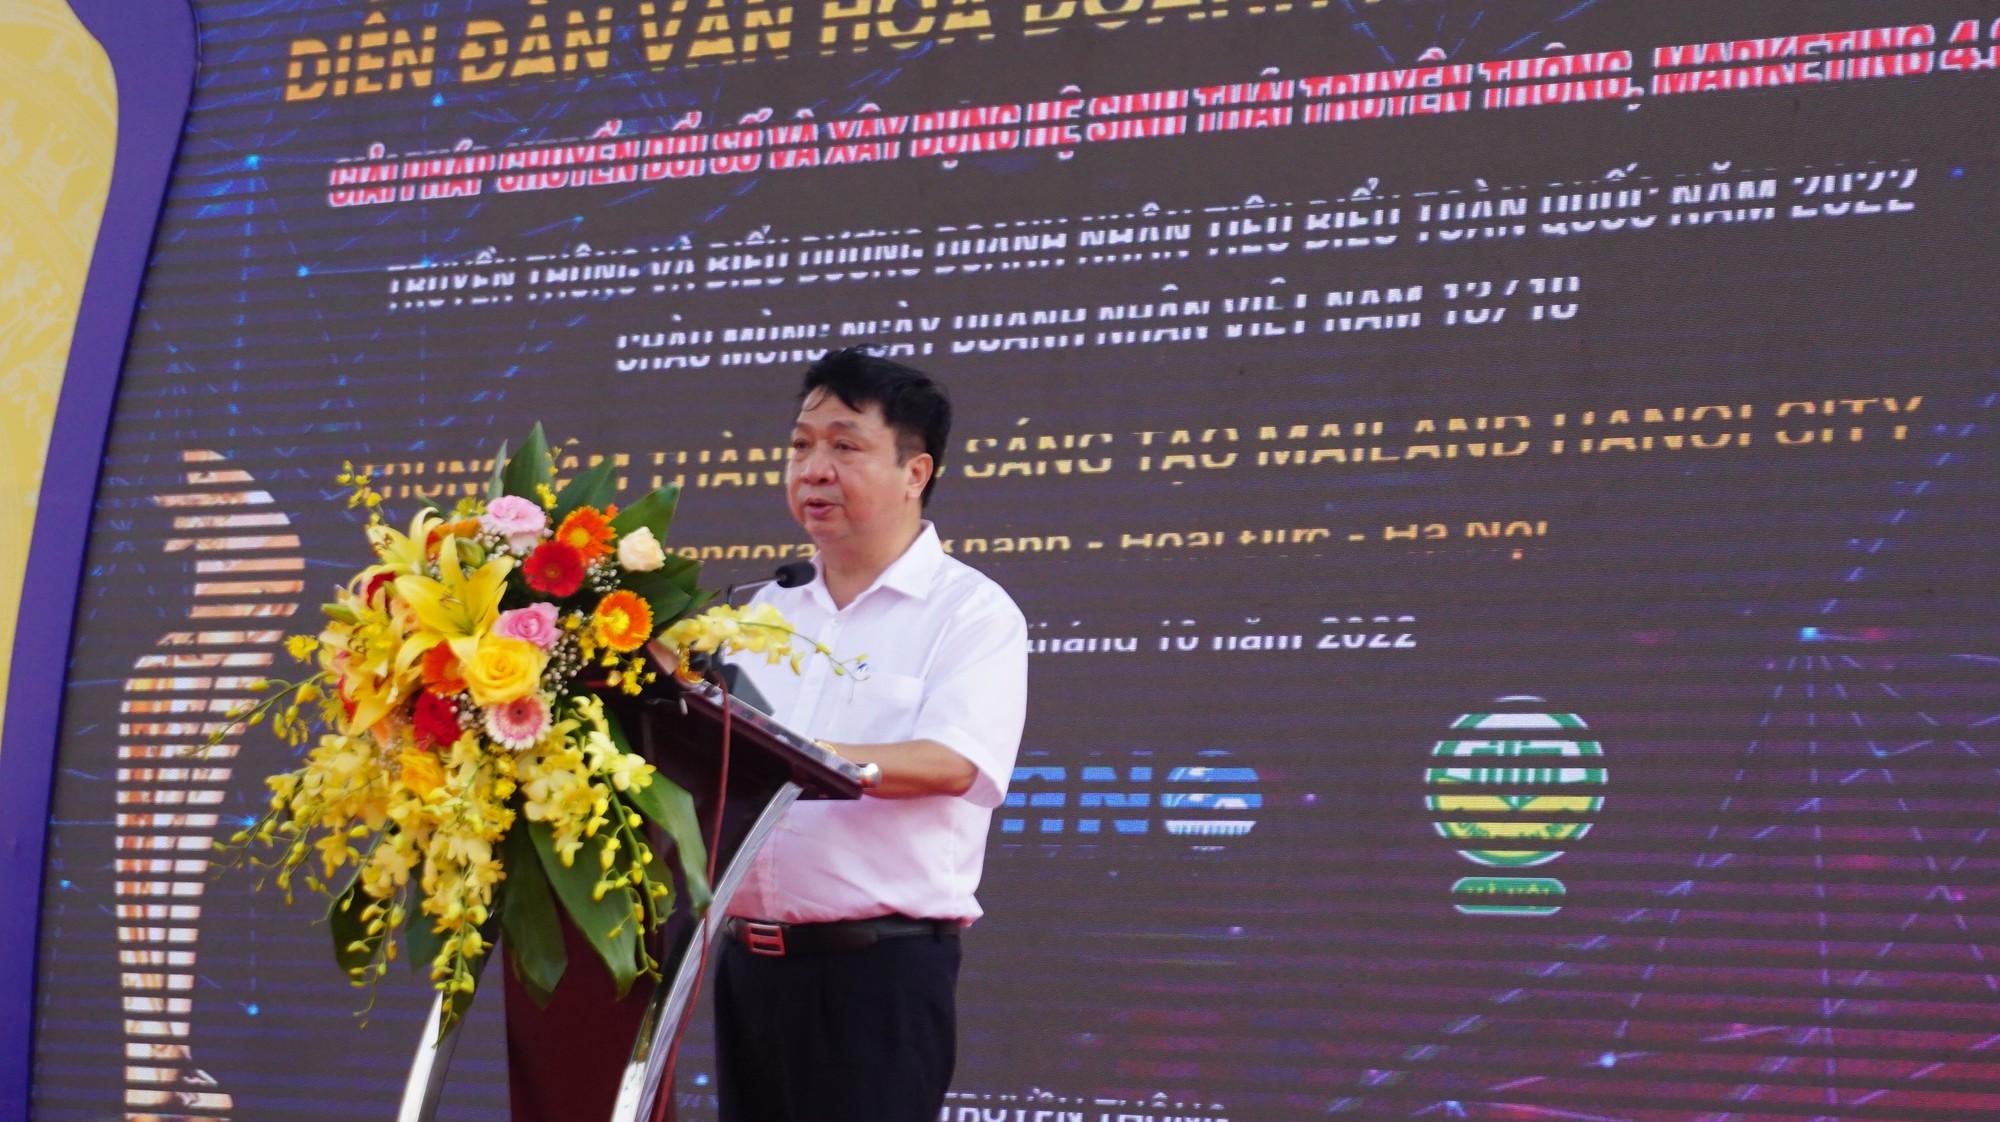 Xây dựng văn hoá doanh nhân Việt Nam, tăng cường liên kết “5 nhà” vì sự phát triển bền vững - Ảnh 1.